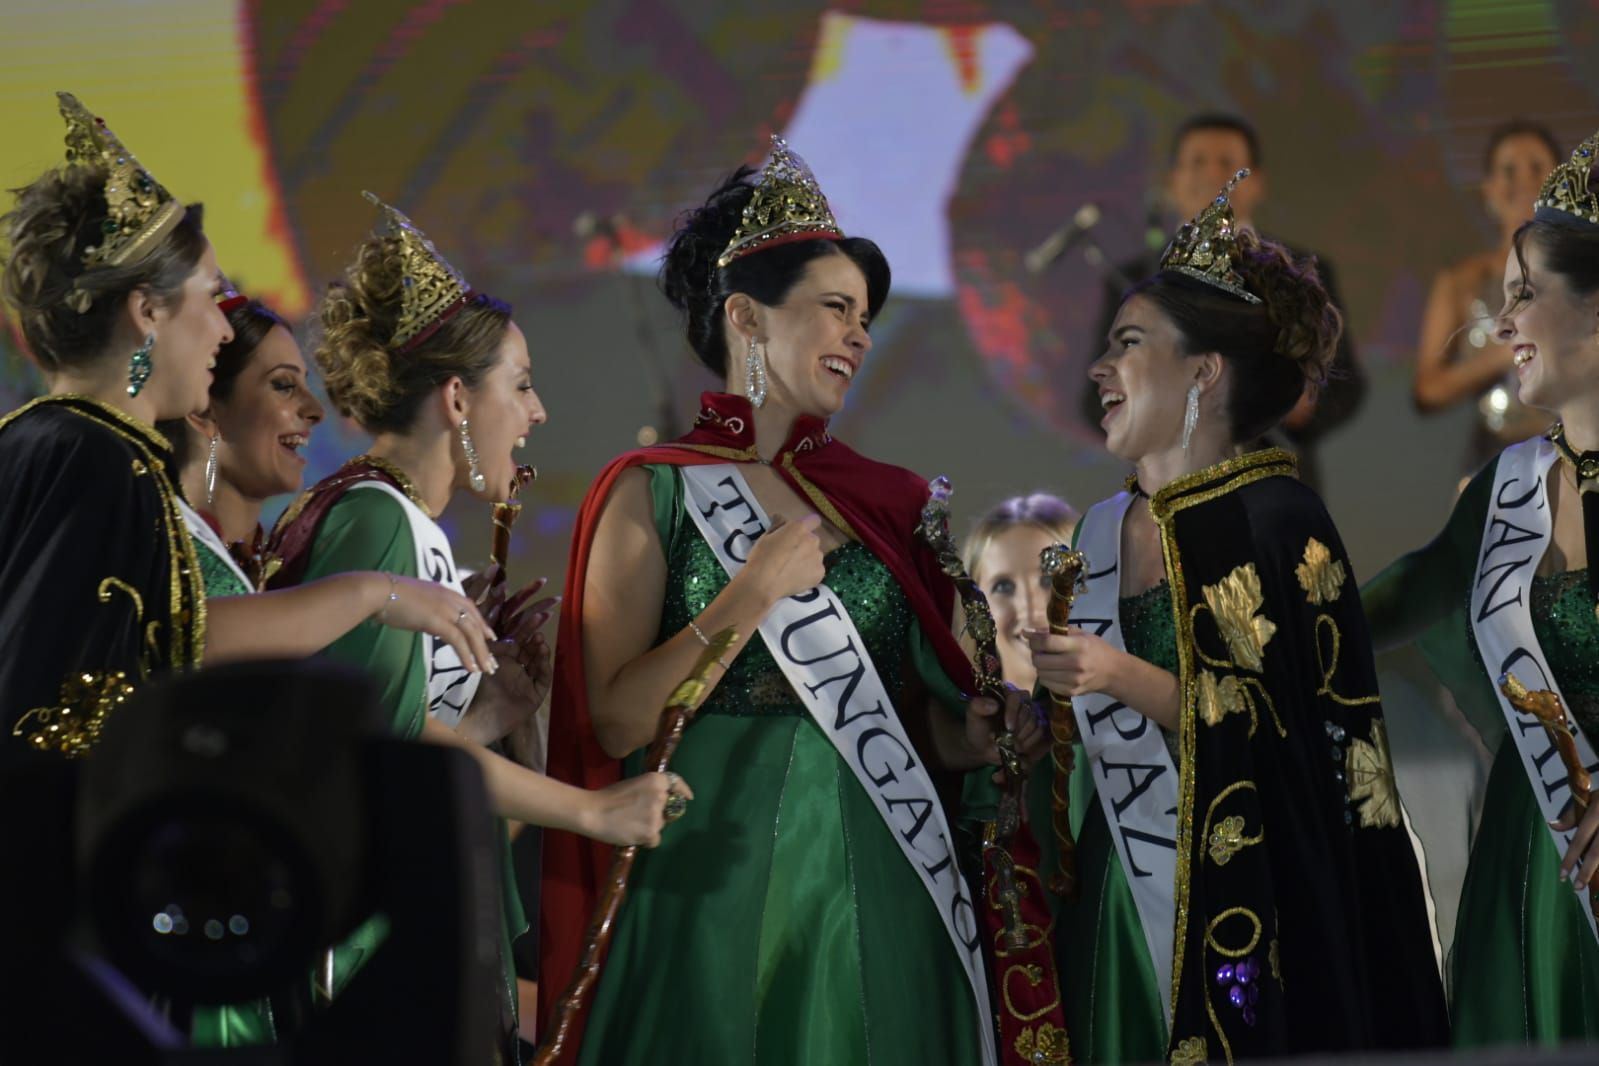 La nueva Reina, Ana Laura Verde, y la flamante Virreinato, Gémina Navarro, se abrazan y sonríen emocionadas al ser elegidas como las nuevas soberanas de la Vendimia.